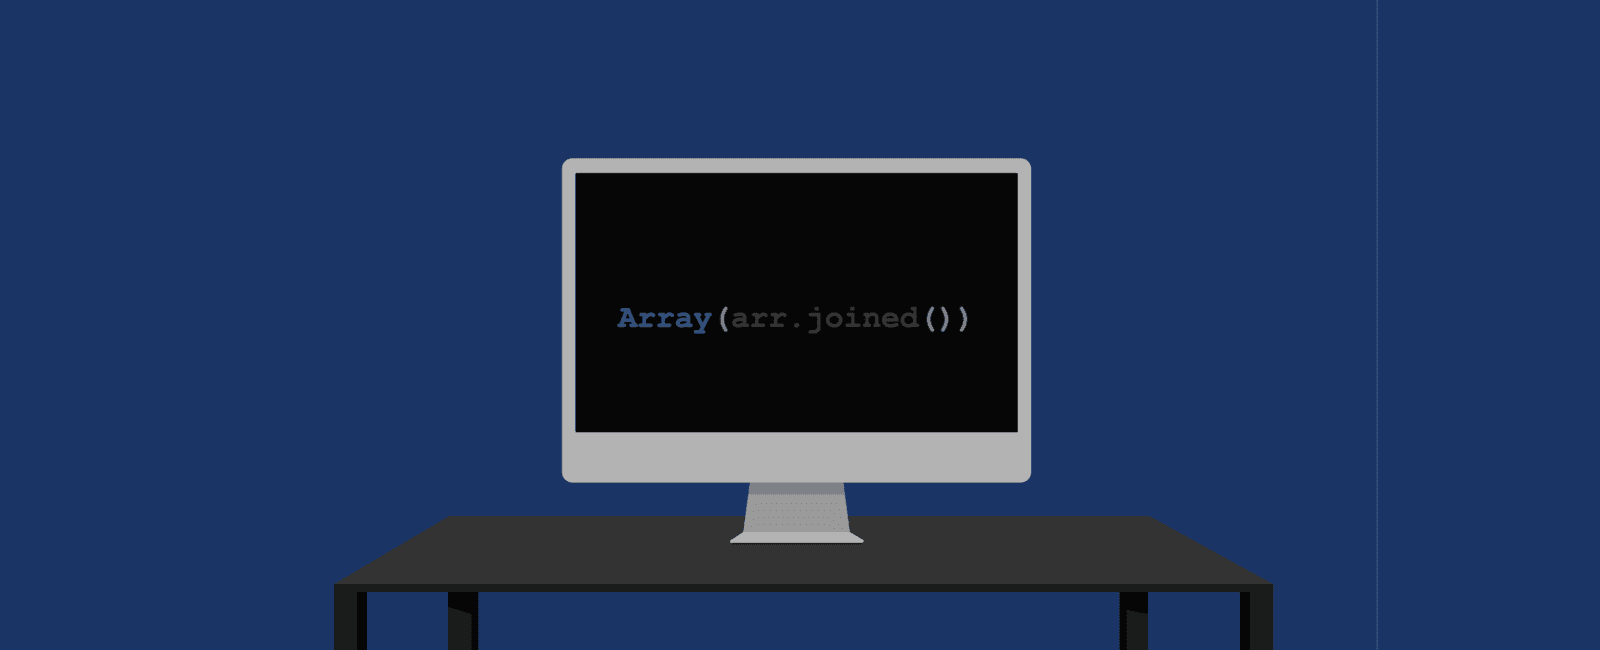 如何将数组转化成字符串(array joined)